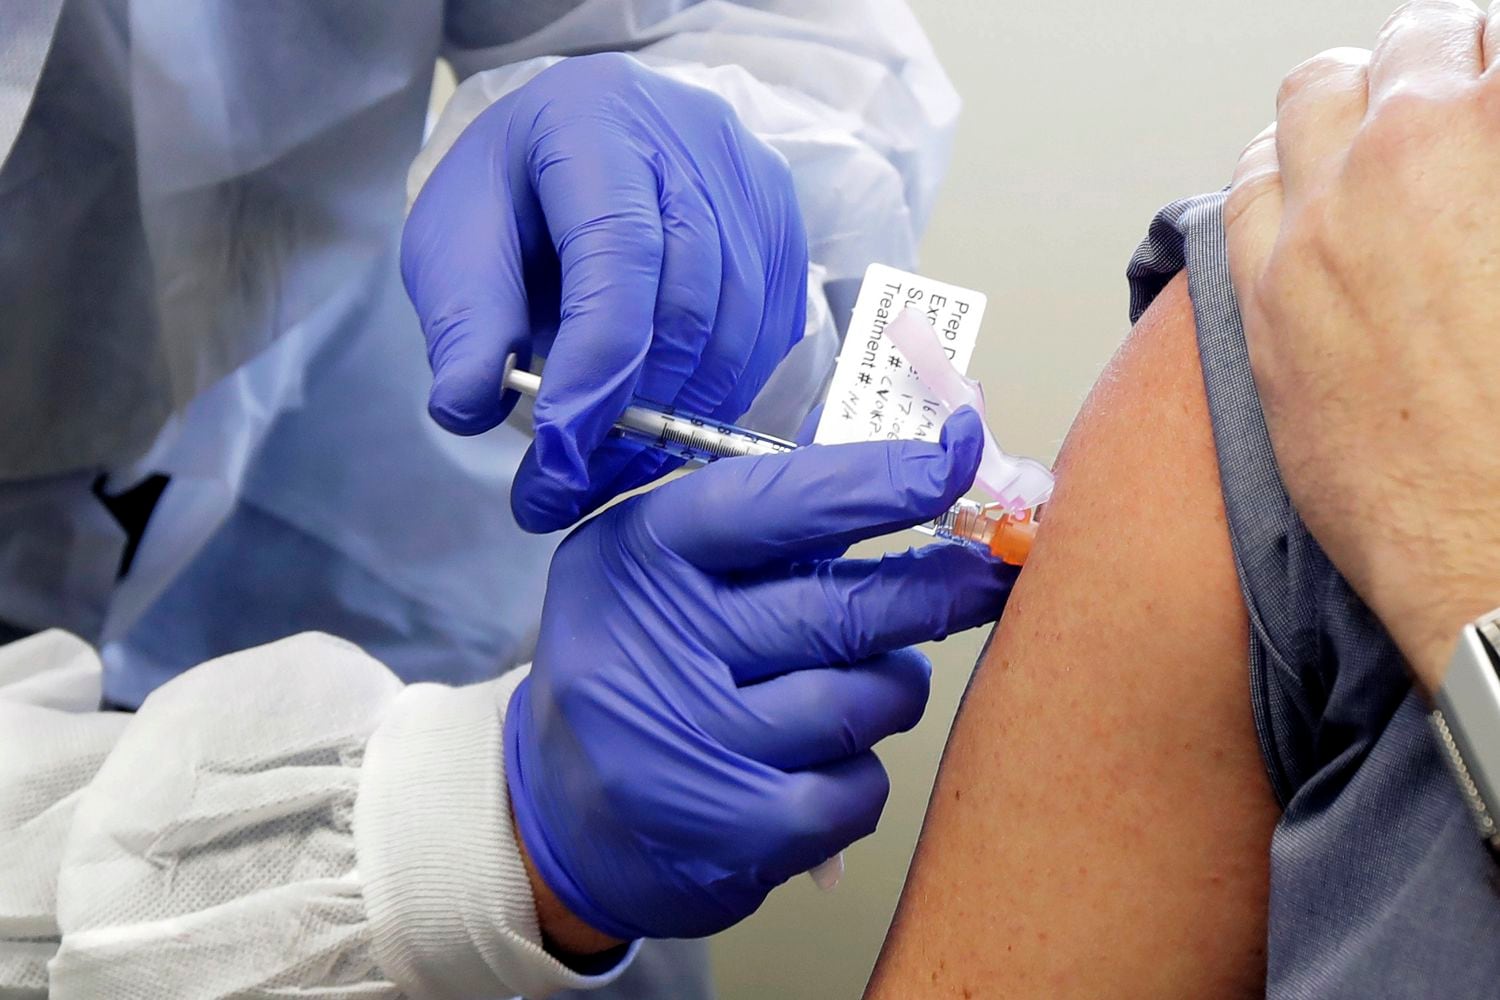 Una persona voluntaria recibe la vacuna experimental de Moderna en Seattle (EE UU), en marzo.